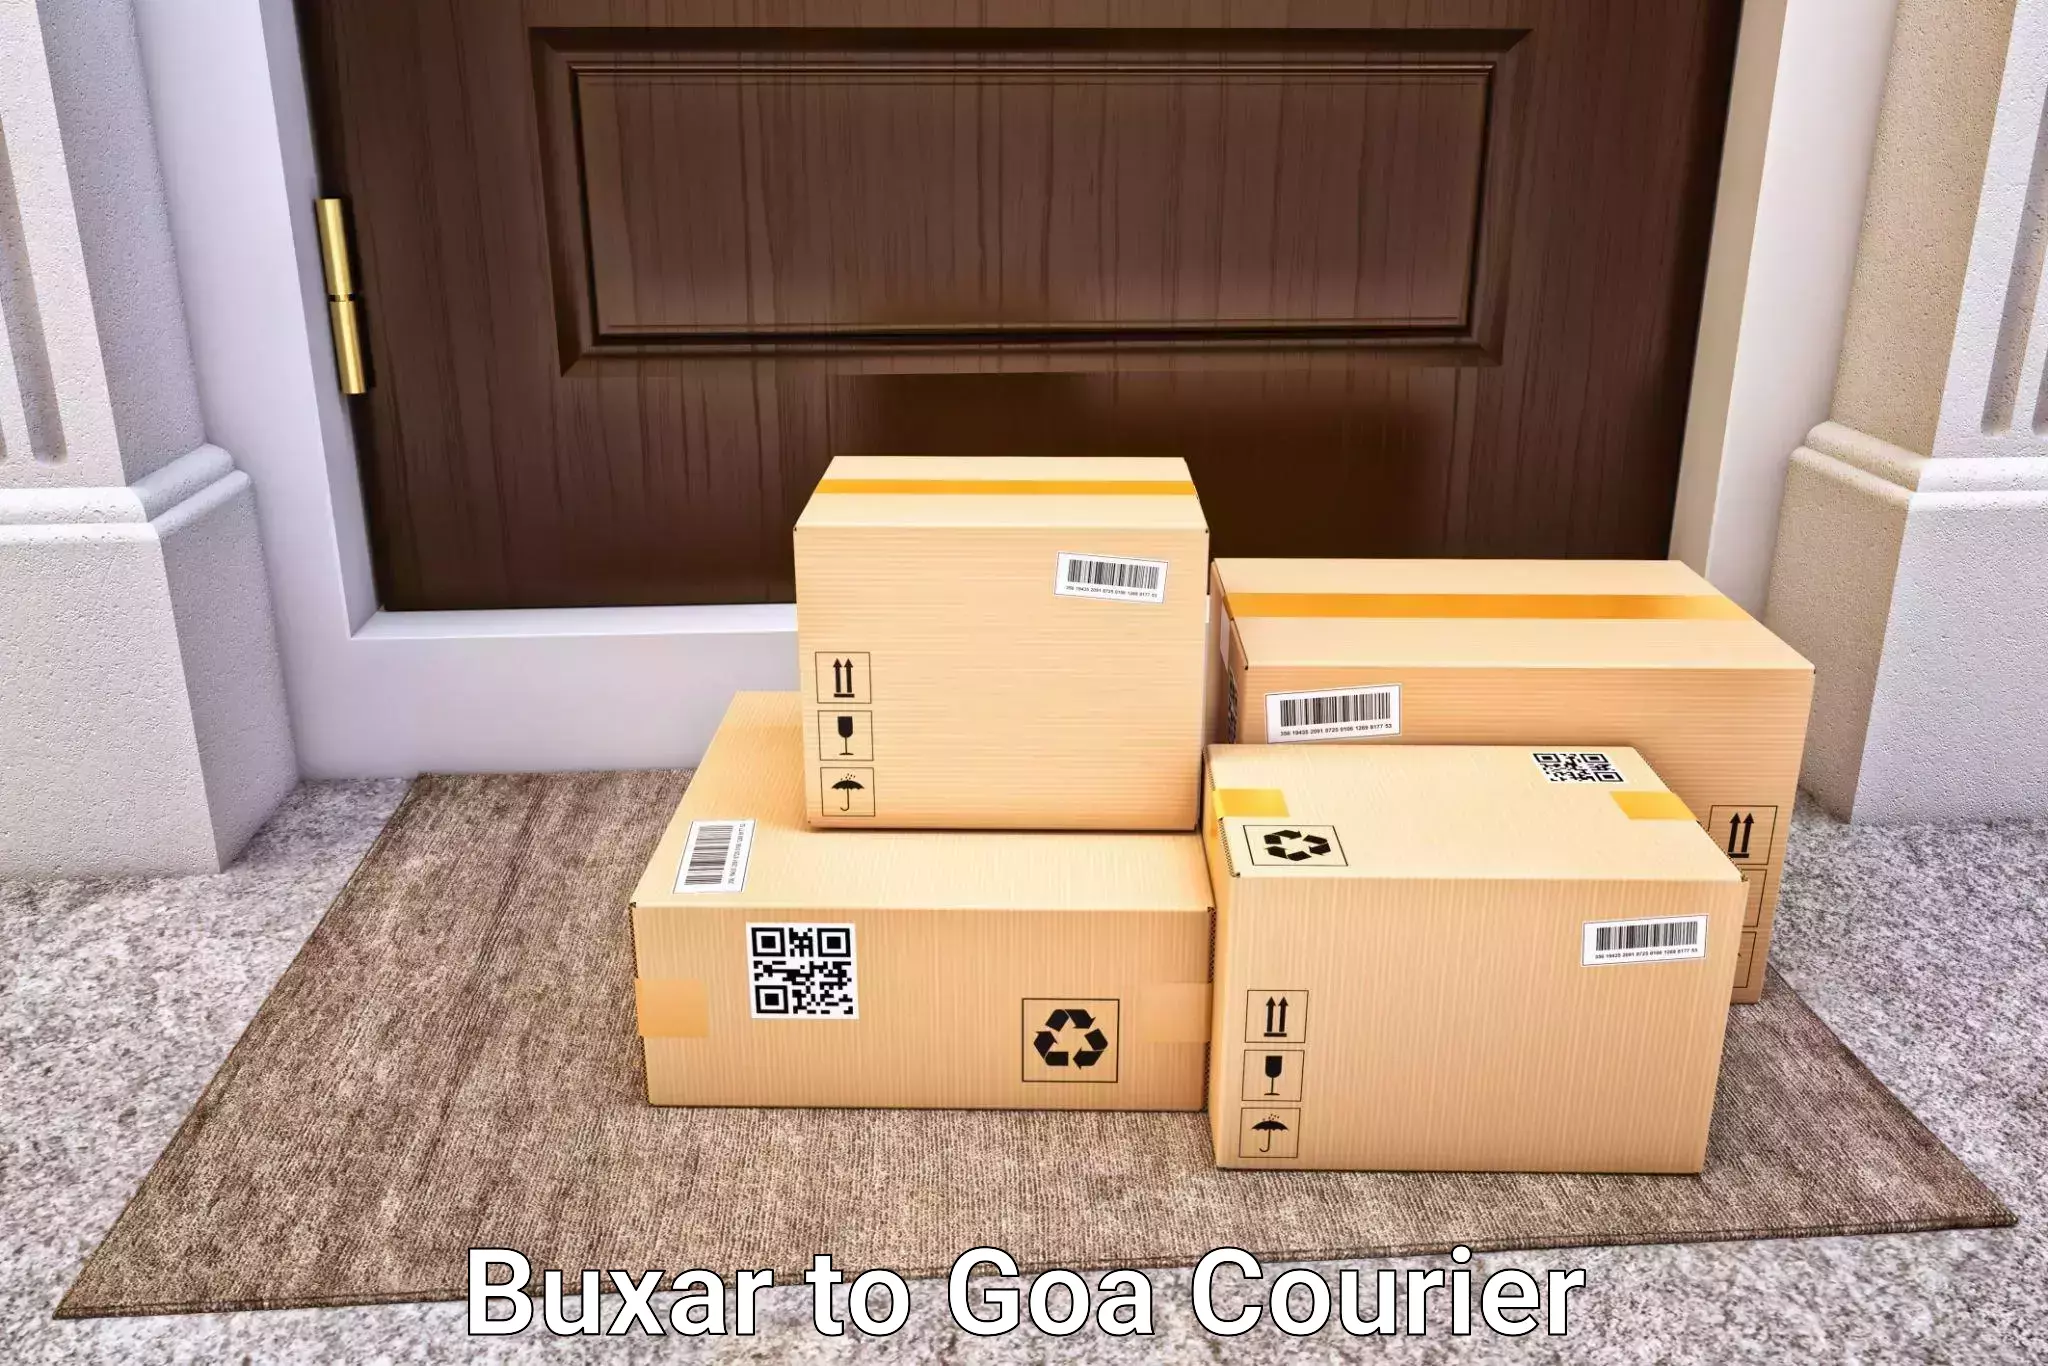 Luggage shipment strategy Buxar to Goa